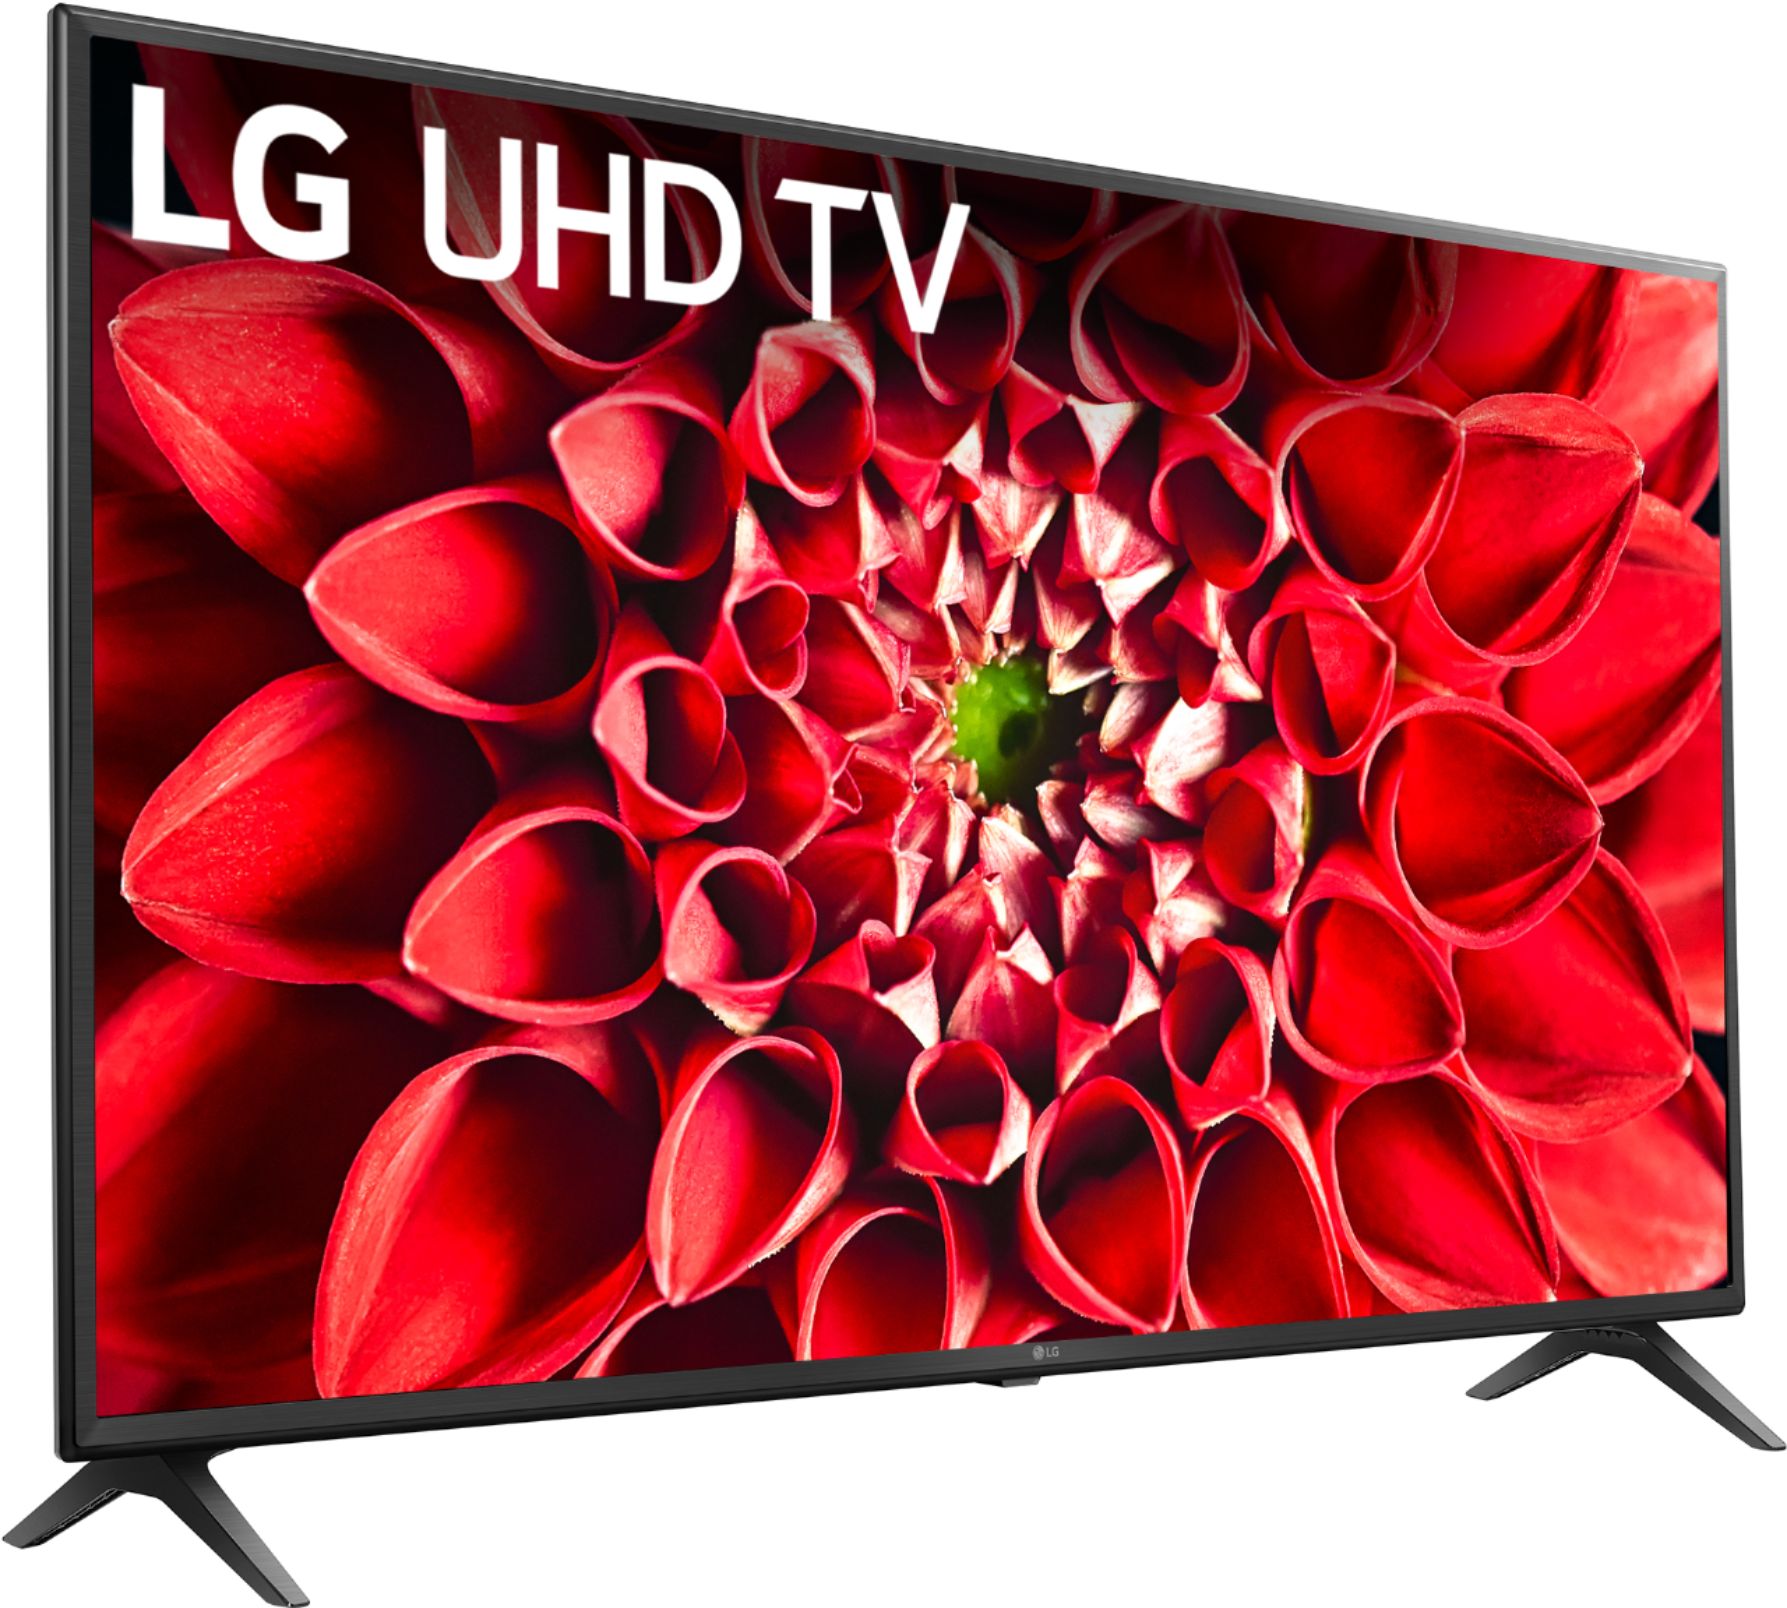 Best Buy: LG UN7000 Series LED 4K UHD Smart webOS TV 60UN7000PUB